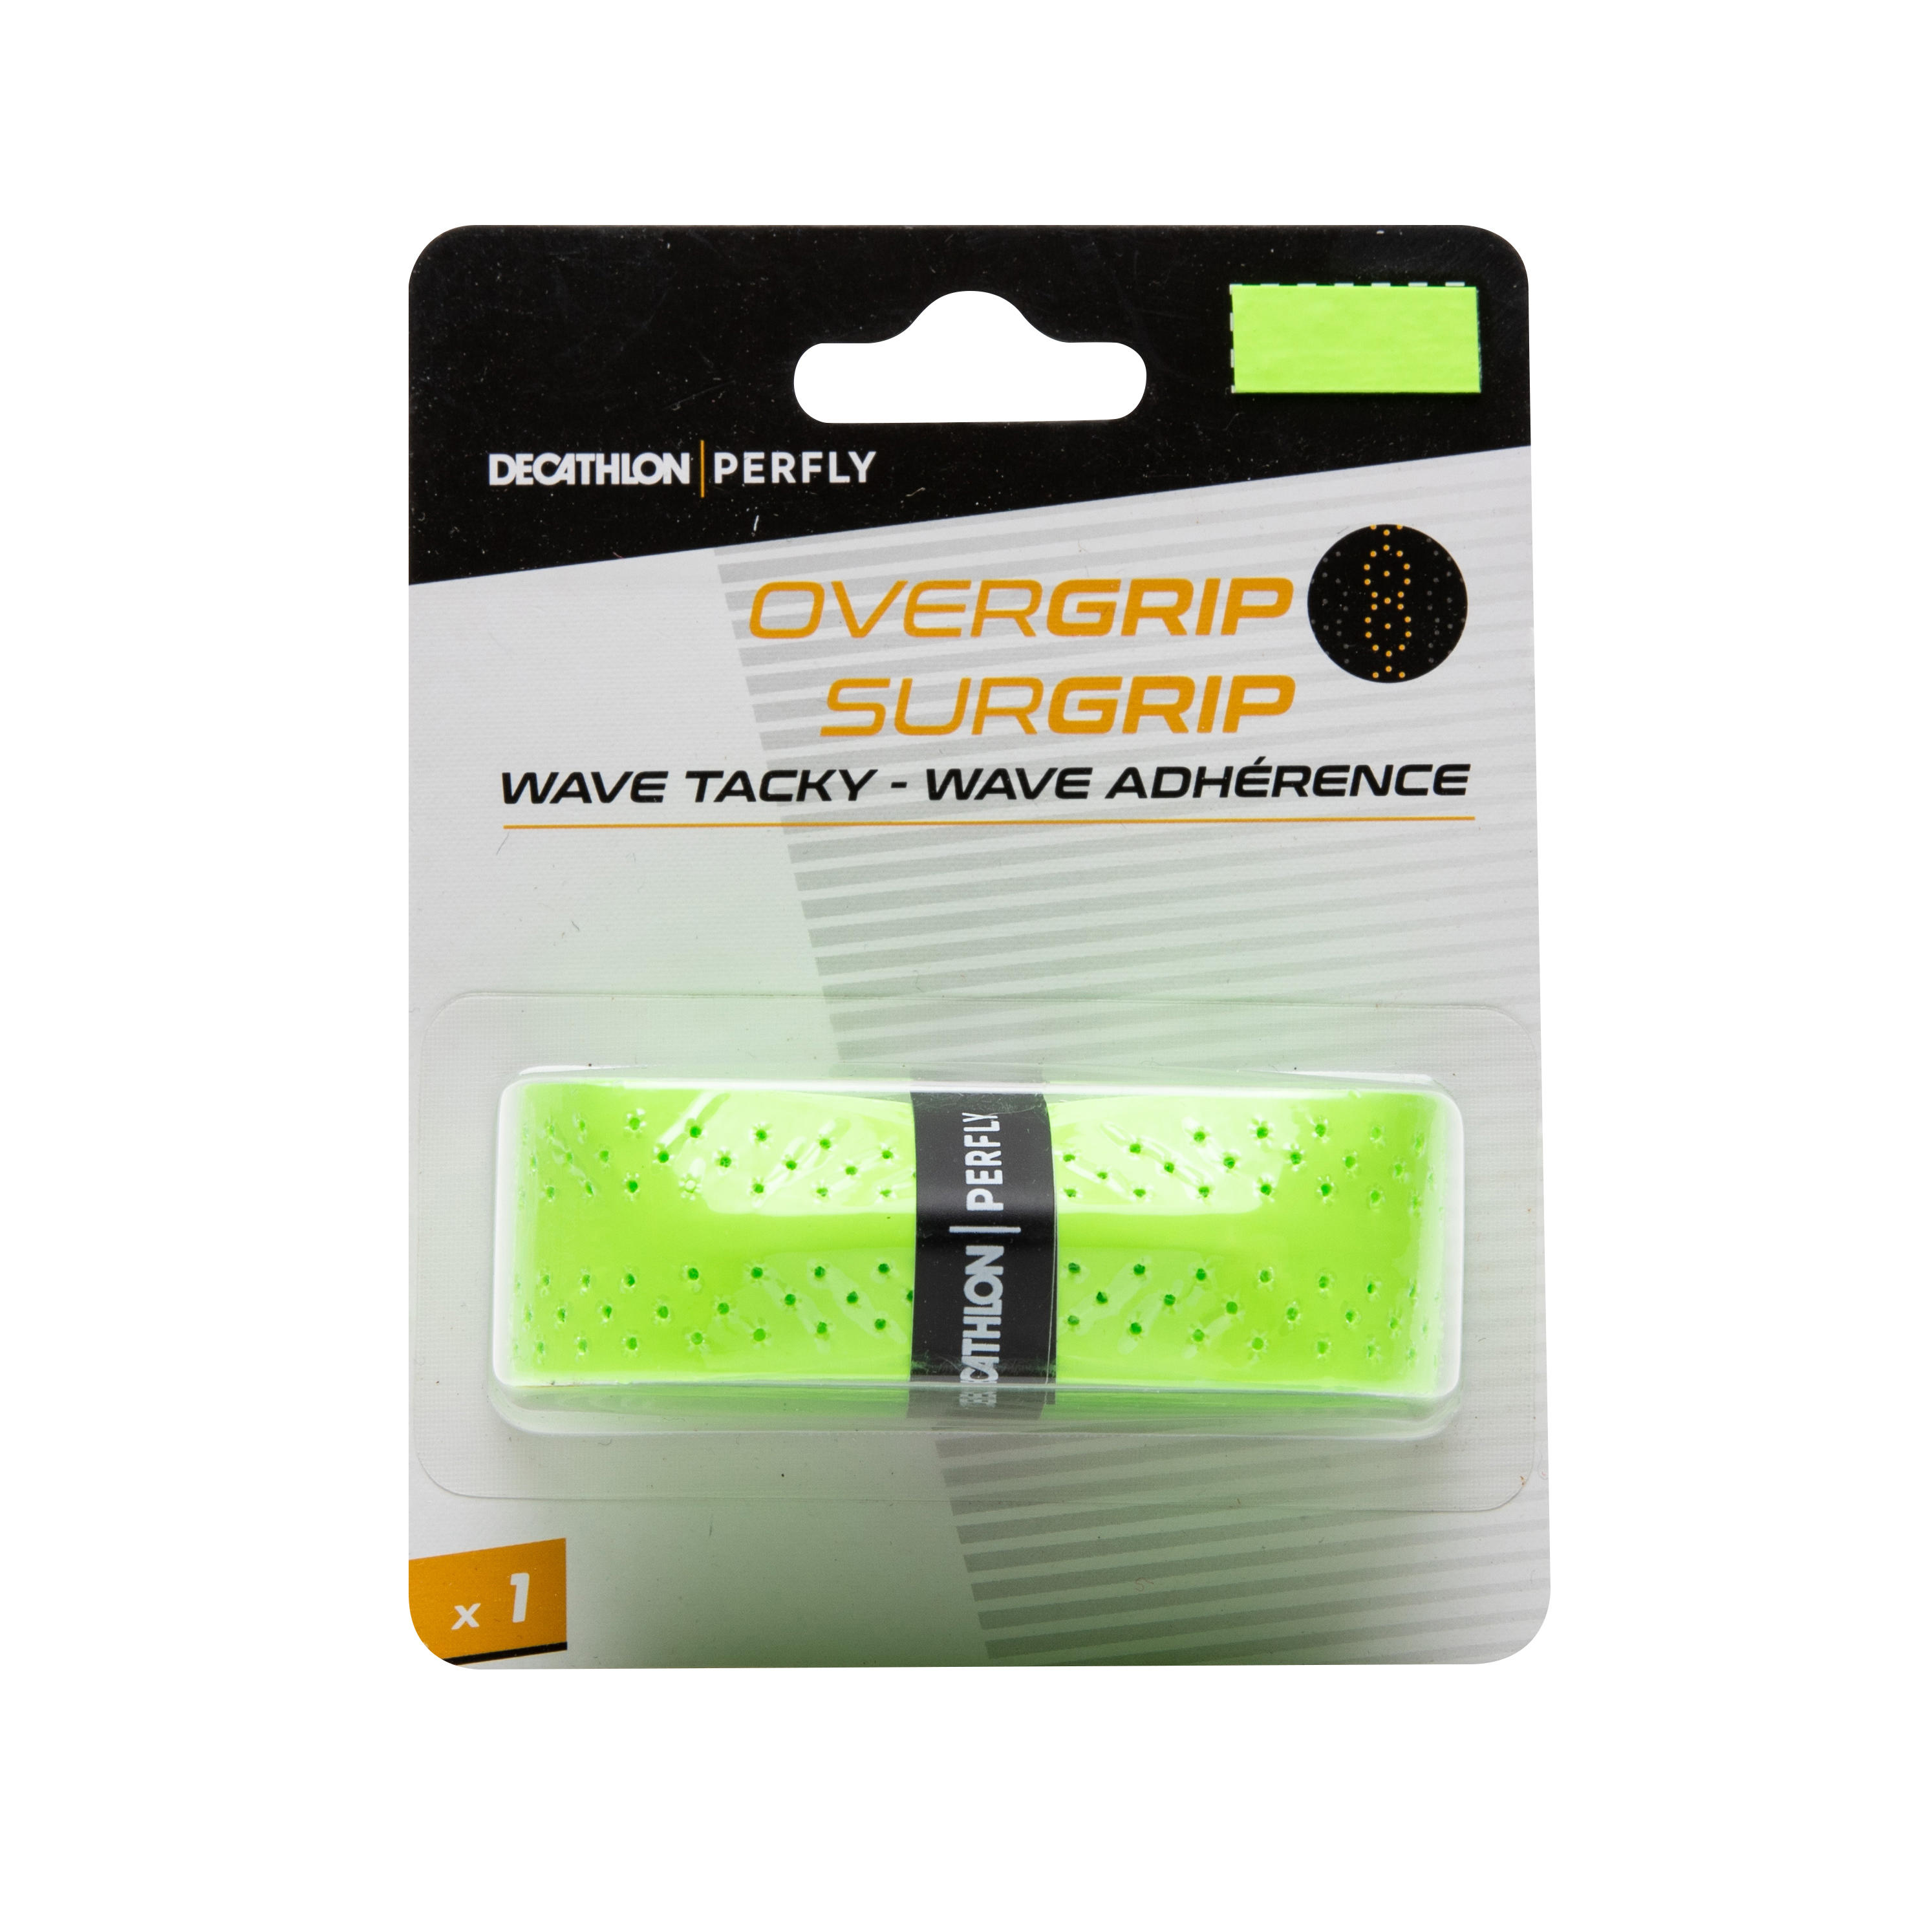 Overgrip Badminton Wave X 1 Verde Fluorescent badminton